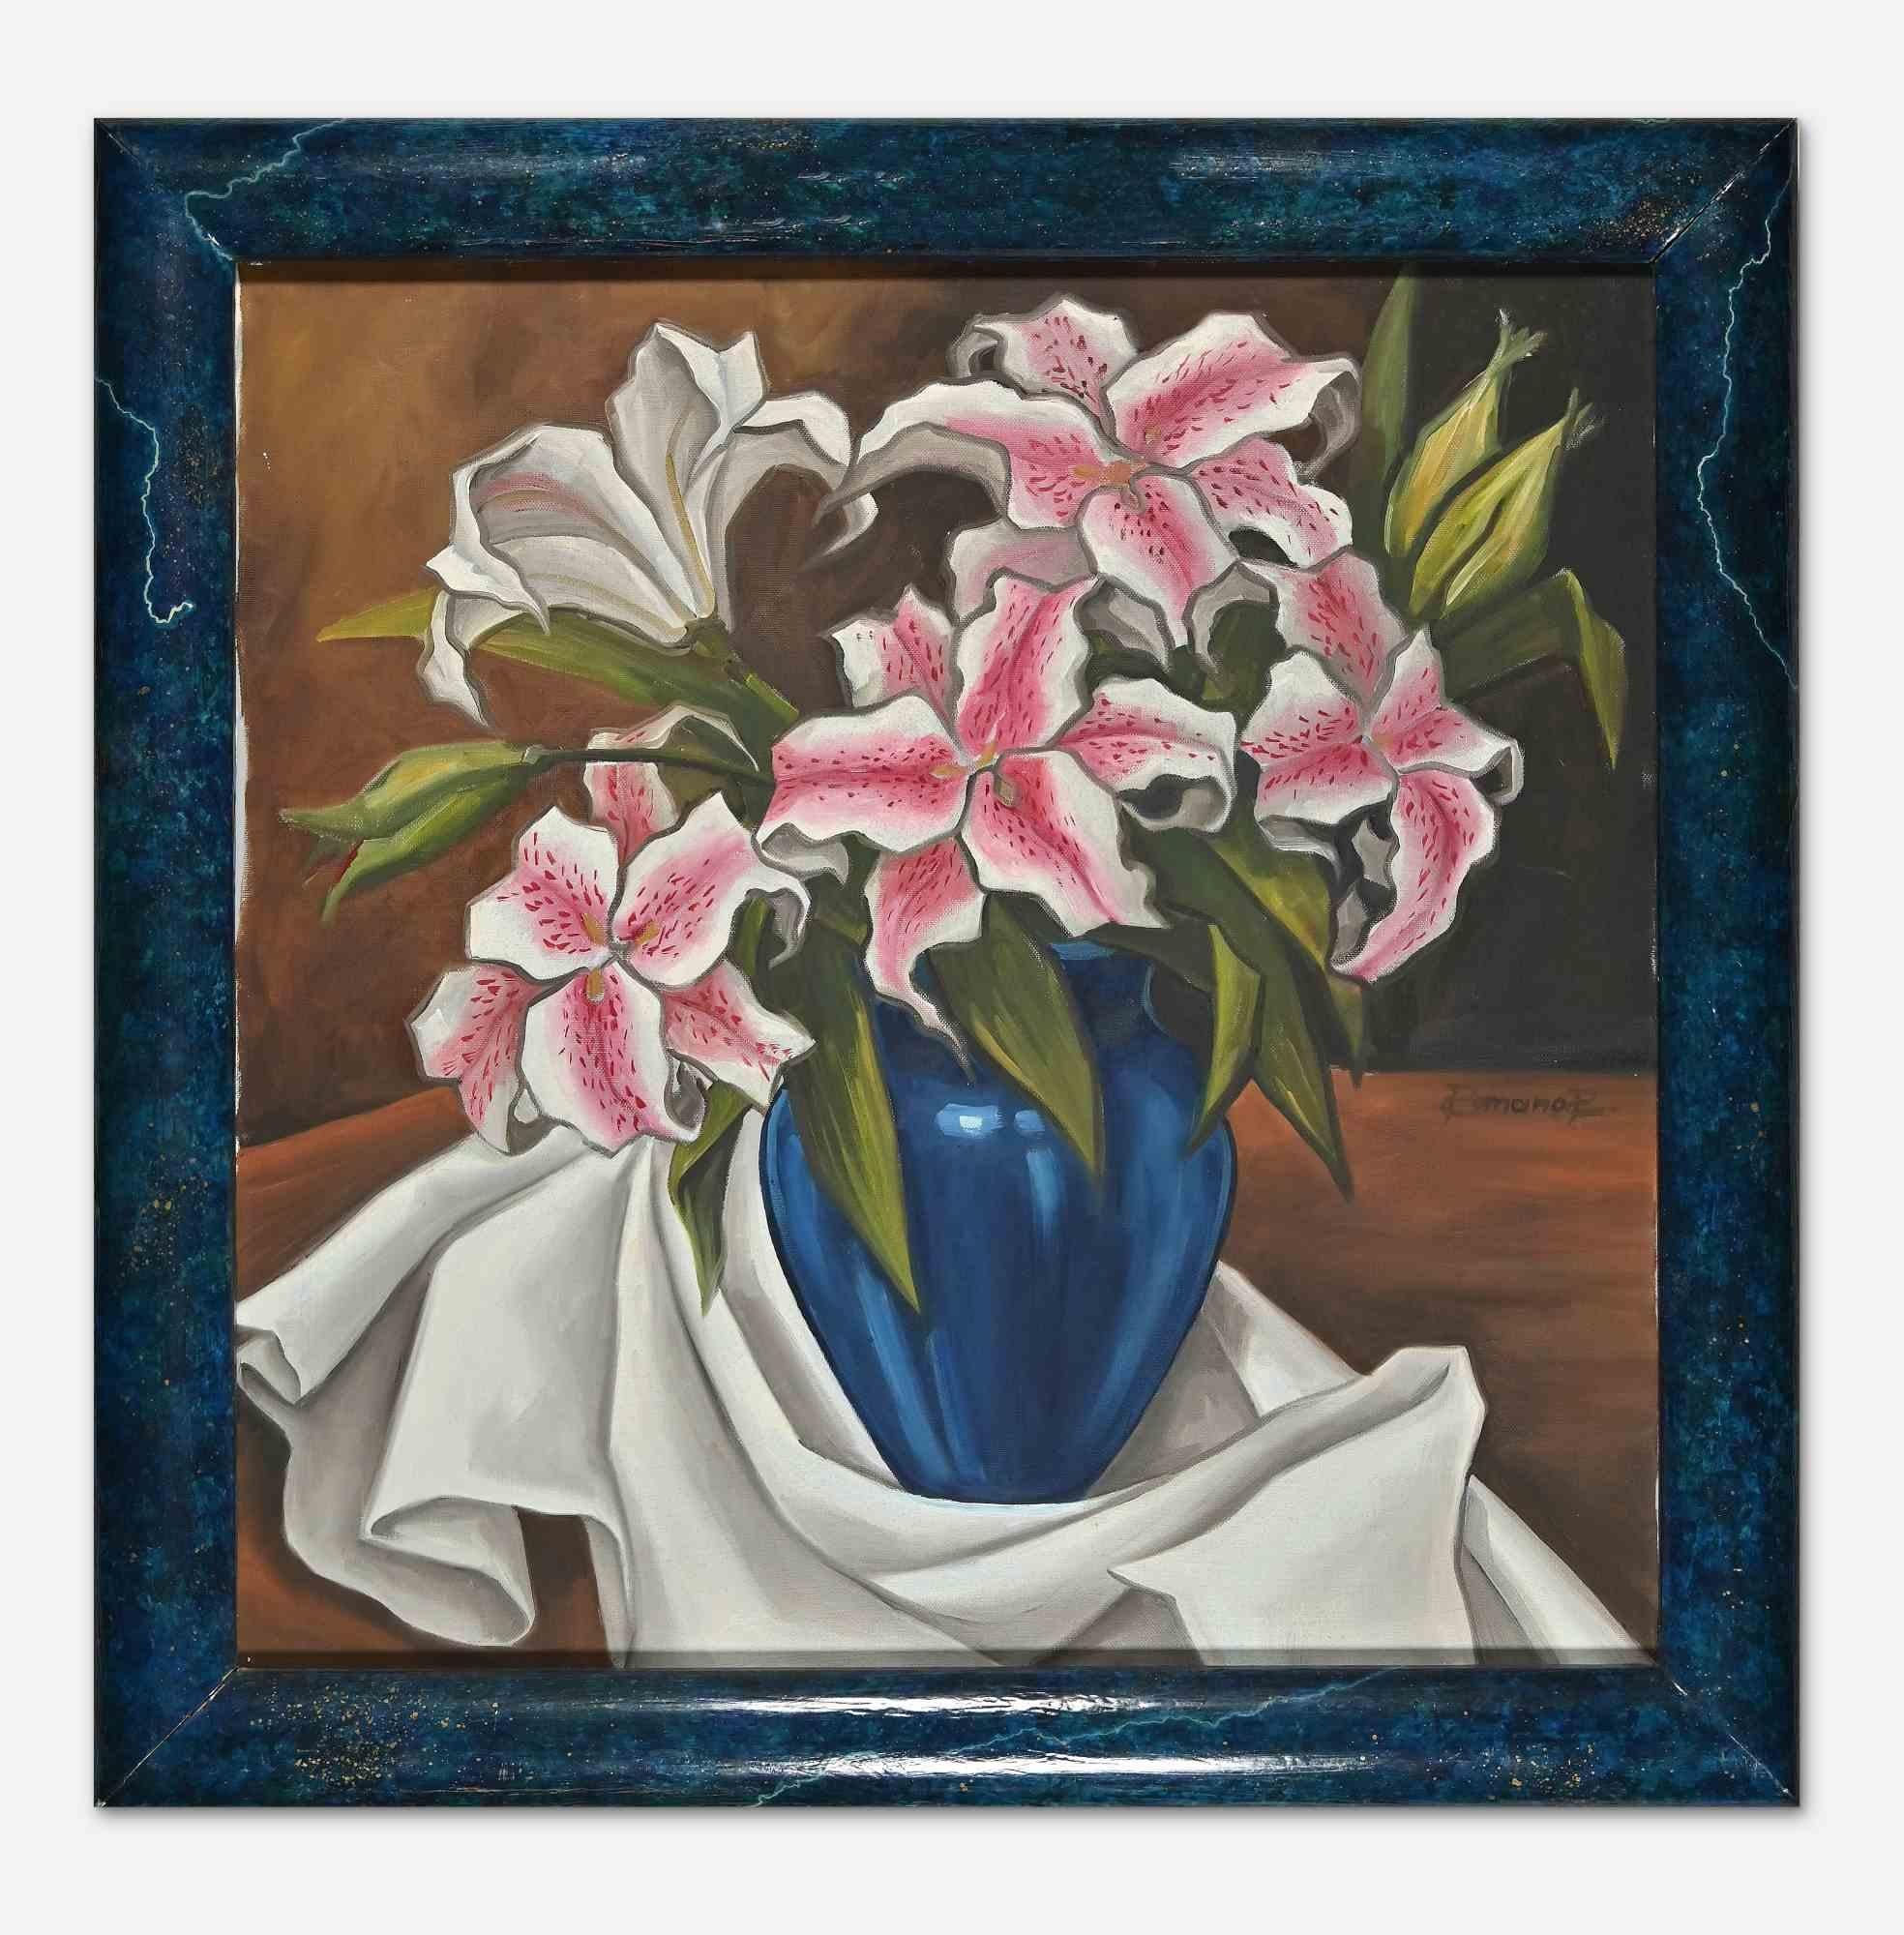 Lilium in blauer Vase ist ein zeitgenössisches Kunstwerk von Raffaele Romano aus dem Jahr 1998.

Gemischtes farbiges Öl auf Leinwand.

Handsigniert und datiert auf der Rückseite des Kunstwerks

Inklusive Rahmen: 59 x 3 x 60 cm